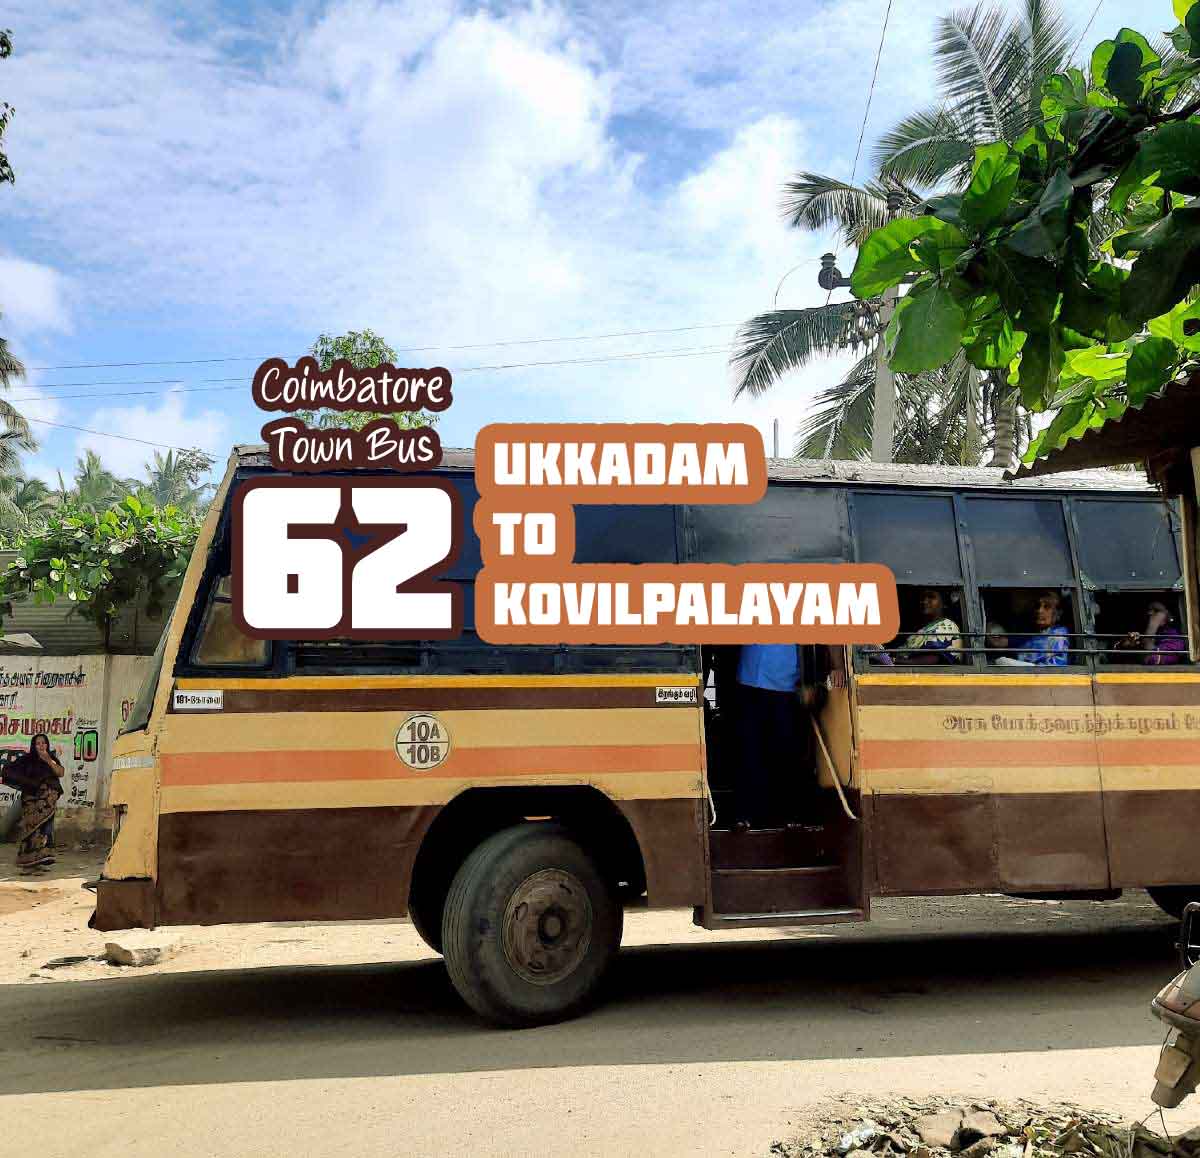 Coimbatore Town Bus Route 62 Ukkadam to Kovilpalayam Bus Timings